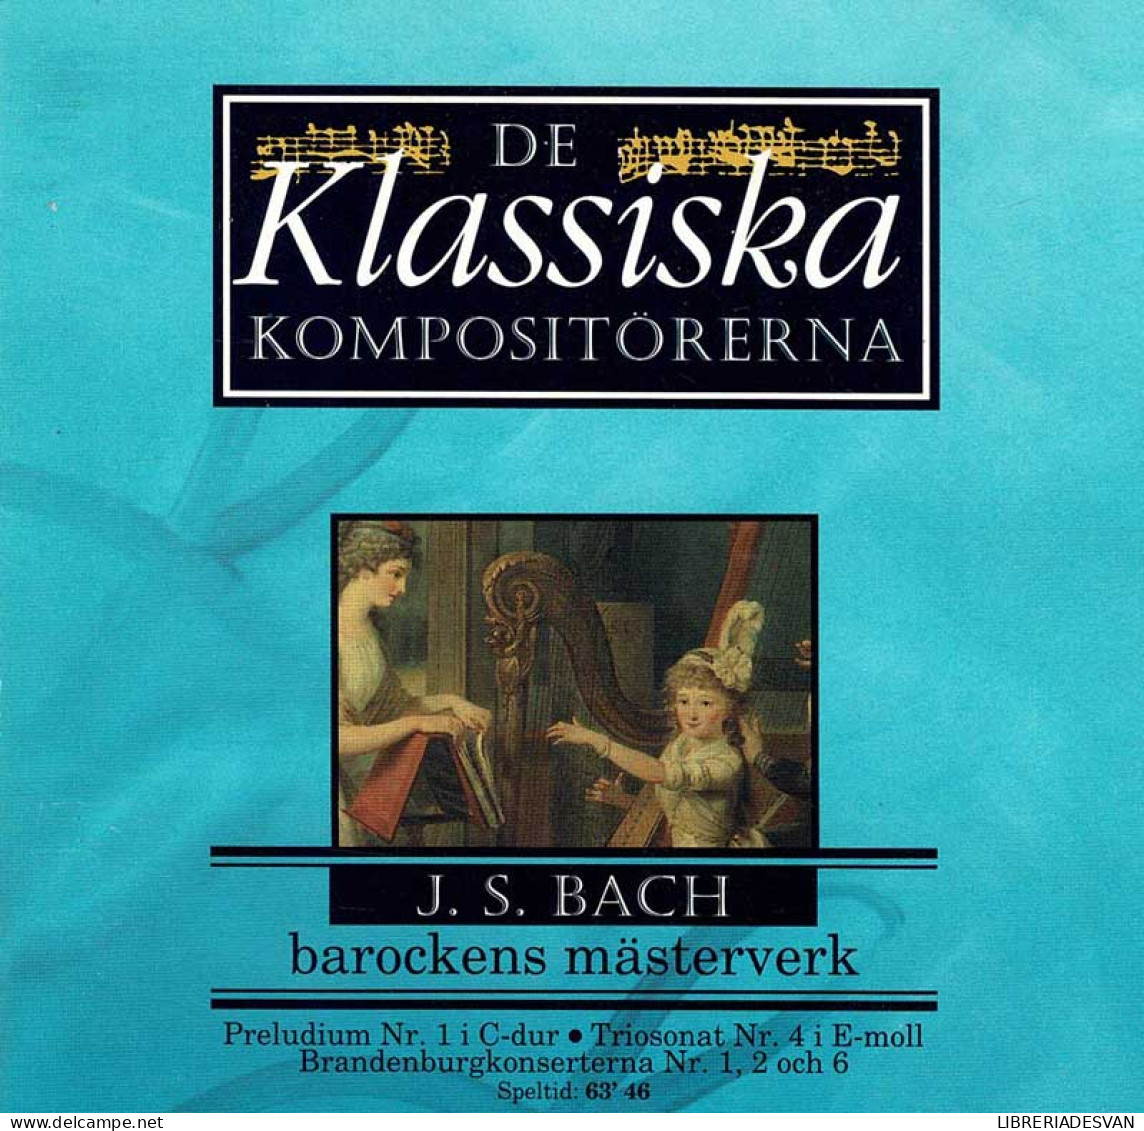 J. S. Bach - Barockens Mästerverk. CD - Classique